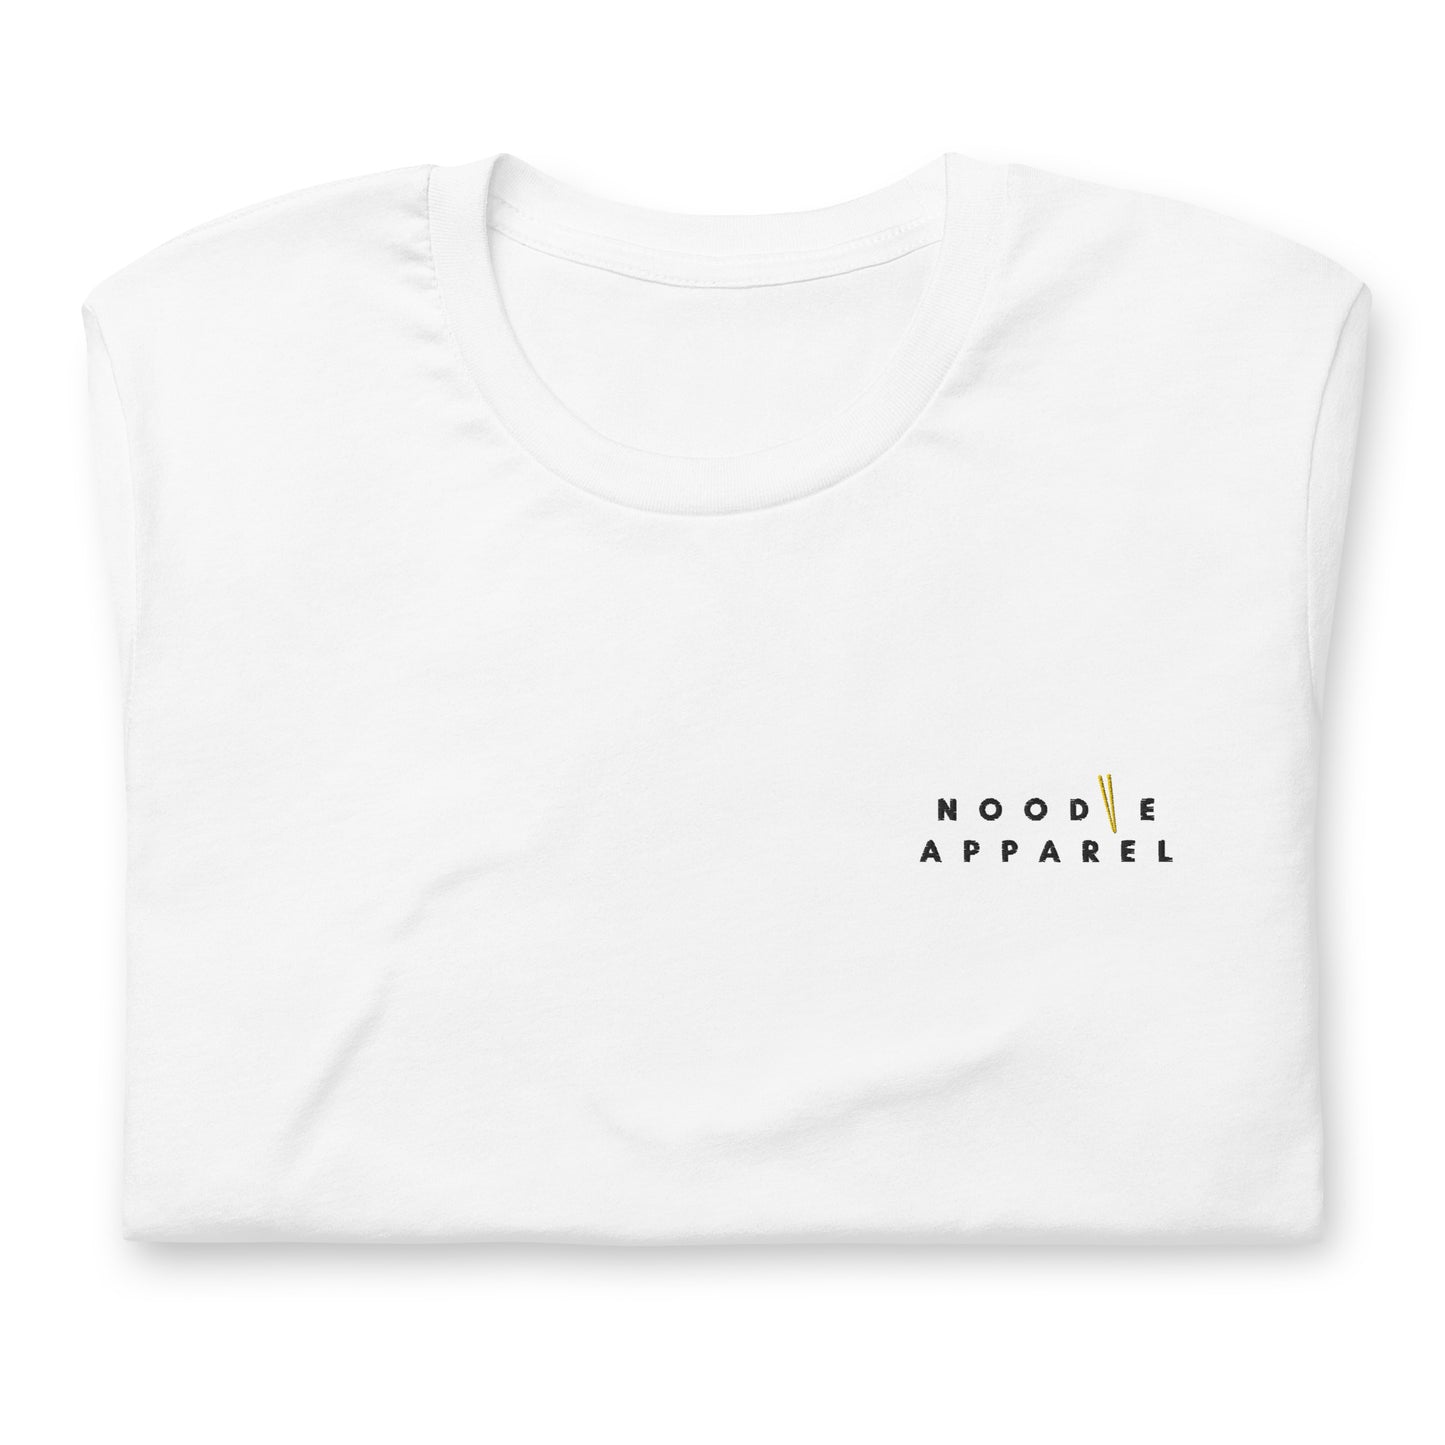 Noodle Empire T-Shirt: Official Logo